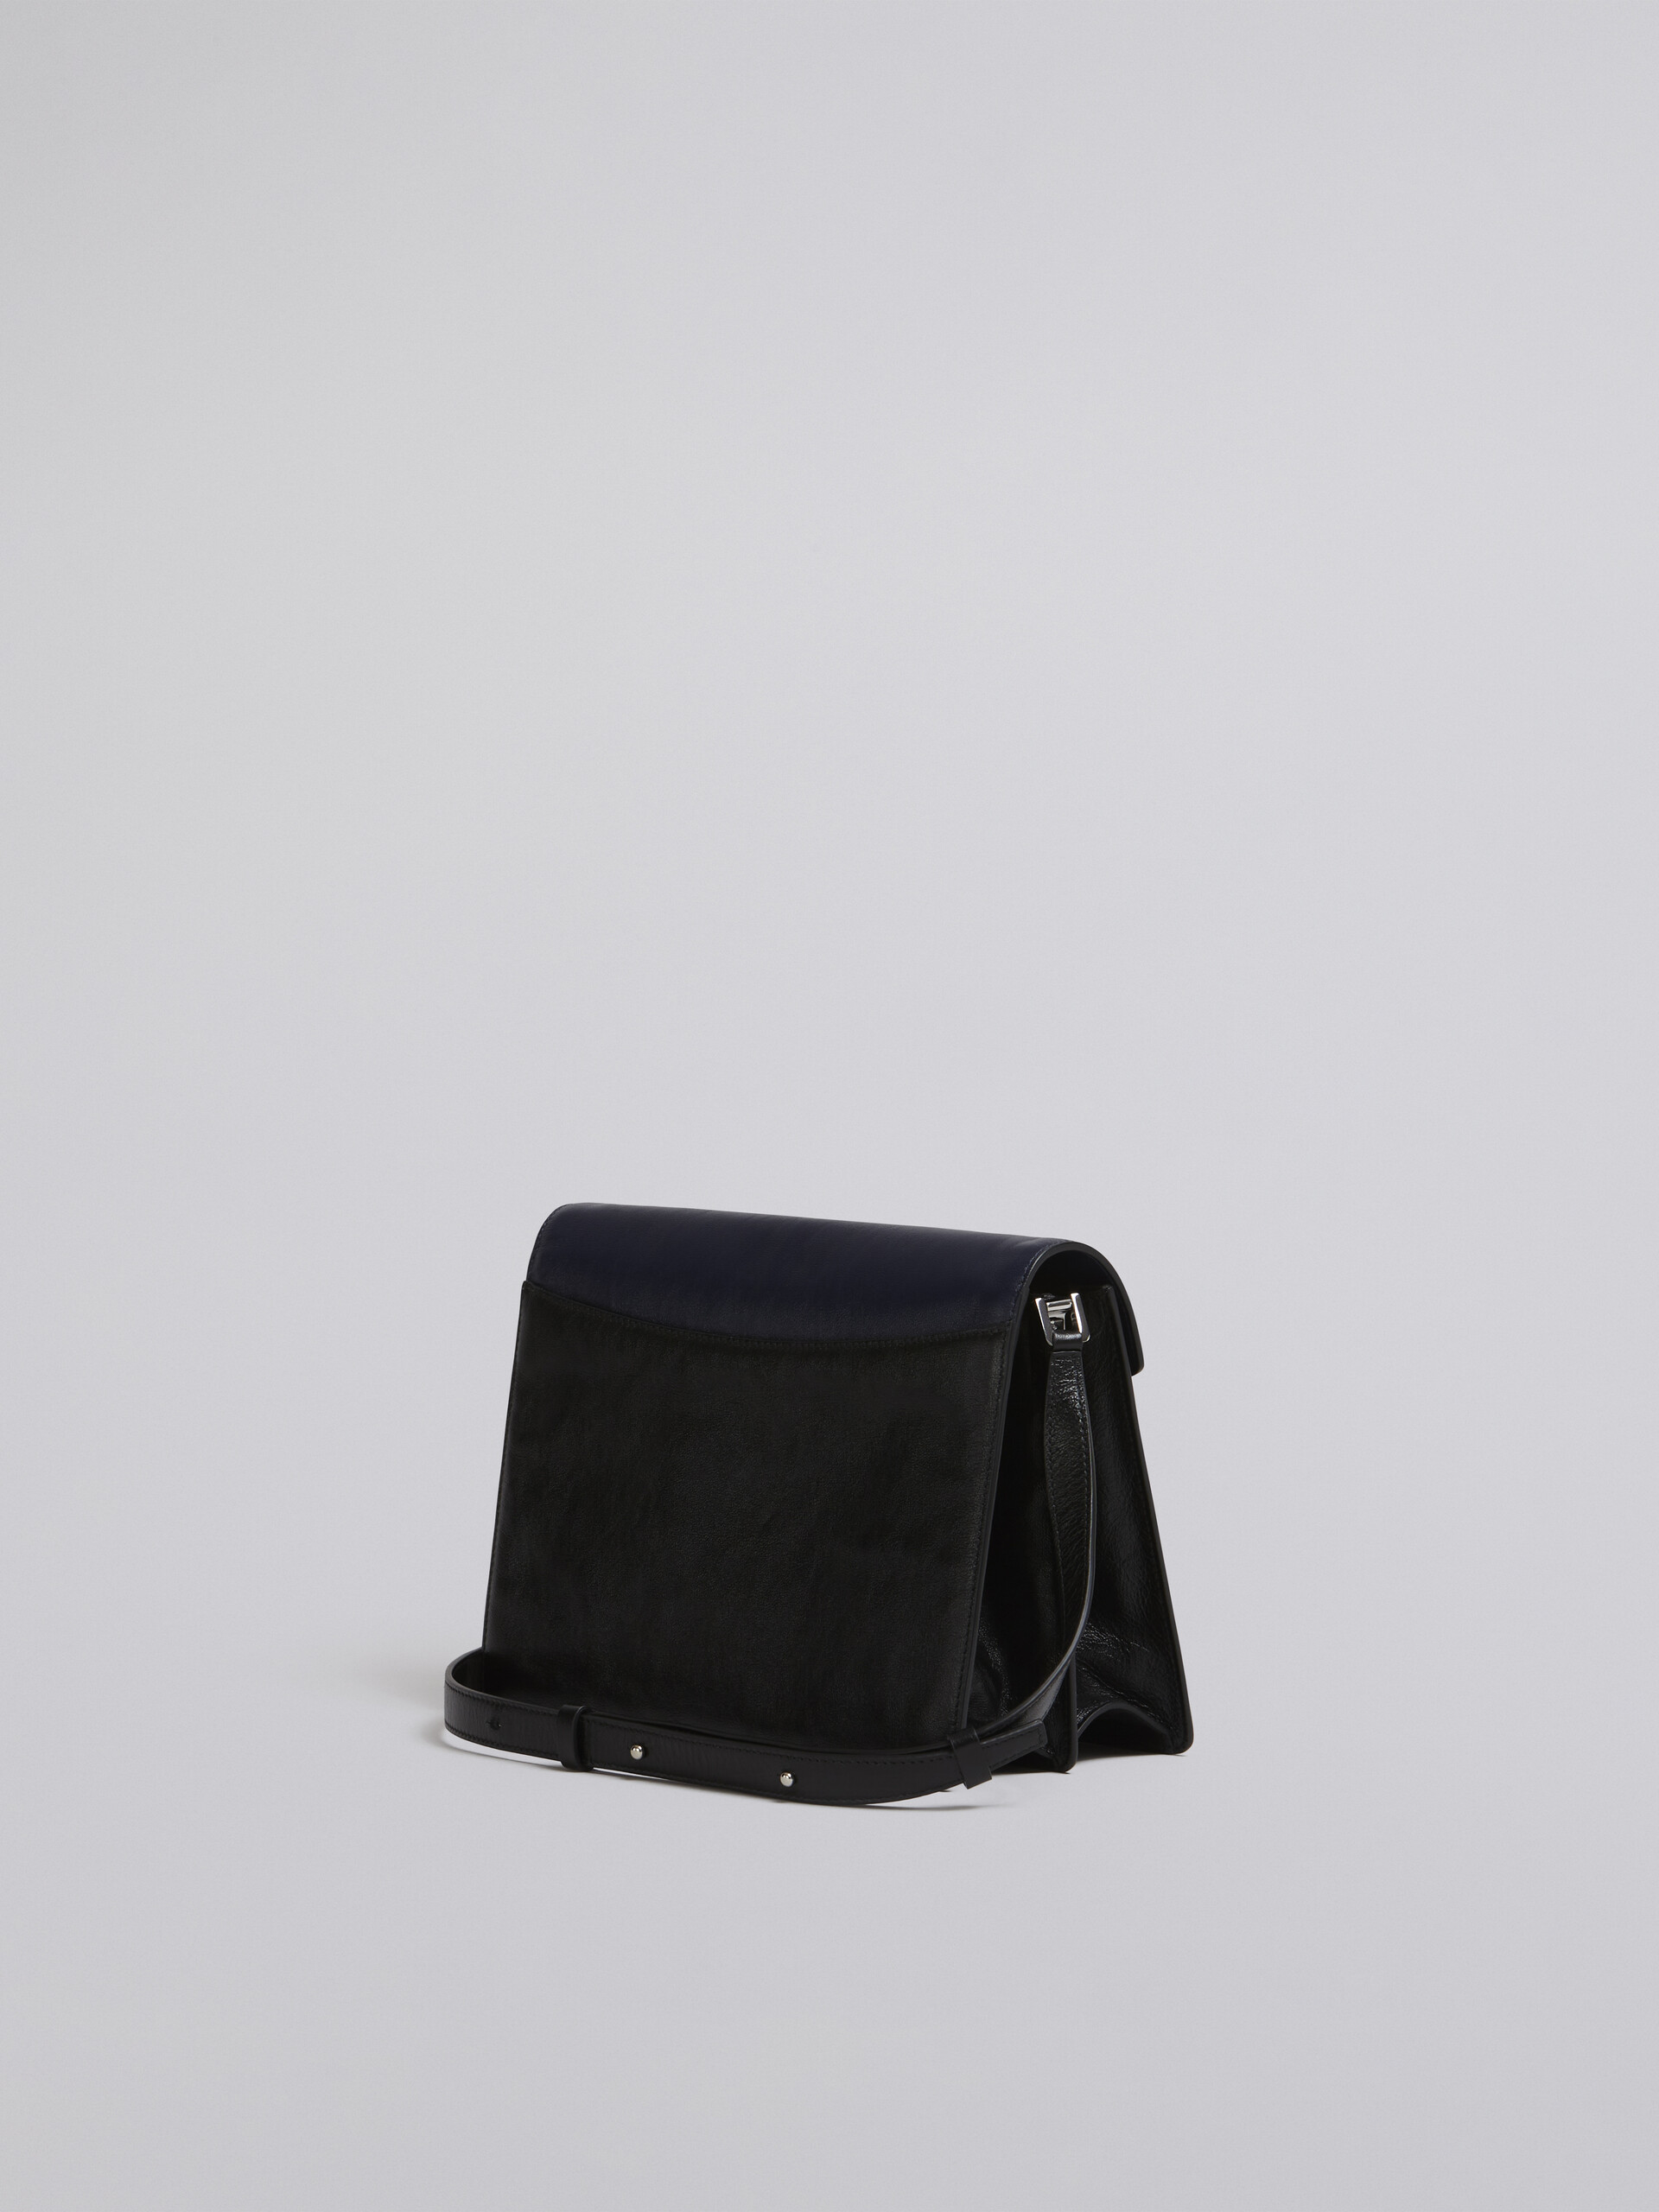 TRUNK SOFT large bag in blue and black leather - Shoulder Bag - Image 3